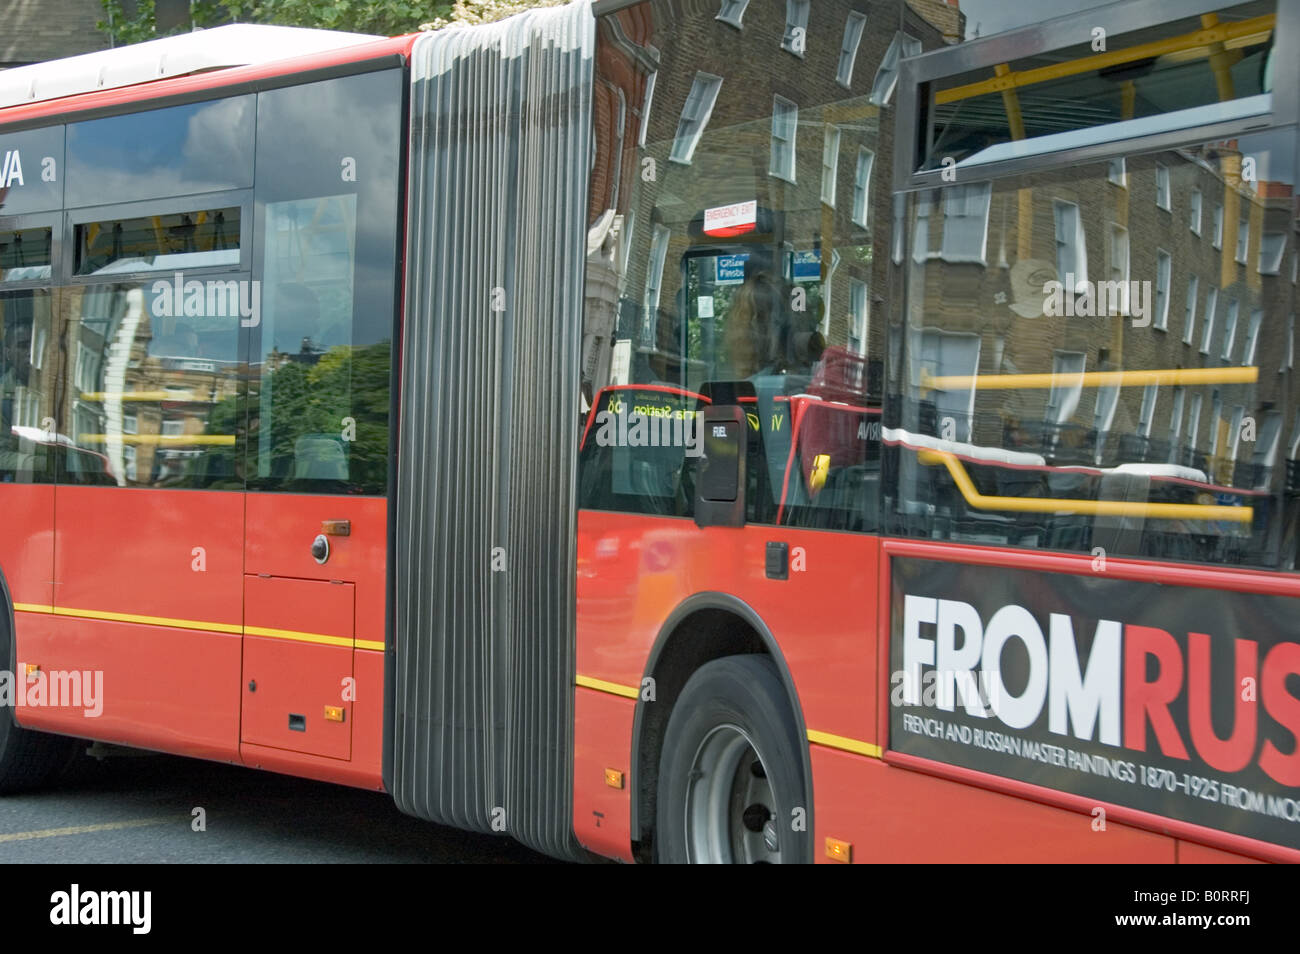 Bendy pliage avec bus bus venant en sens inverse et bâtiments reflètent dans Islington Londres Angleterre Royaume-uni windows Banque D'Images